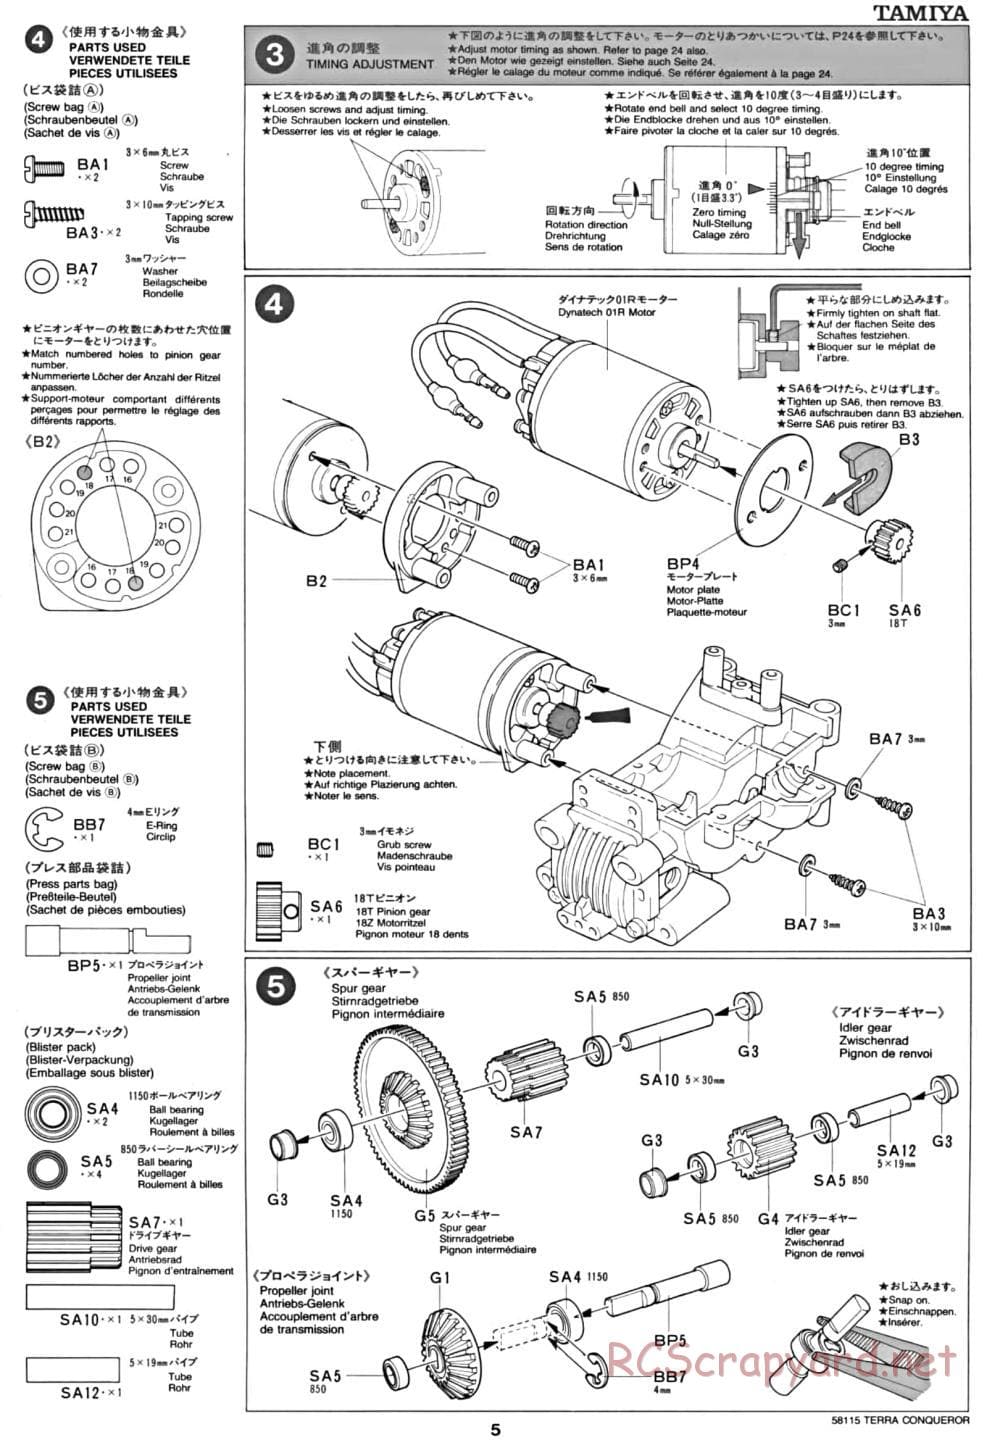 Tamiya - Terra Conqueror Chassis - Manual - Page 5